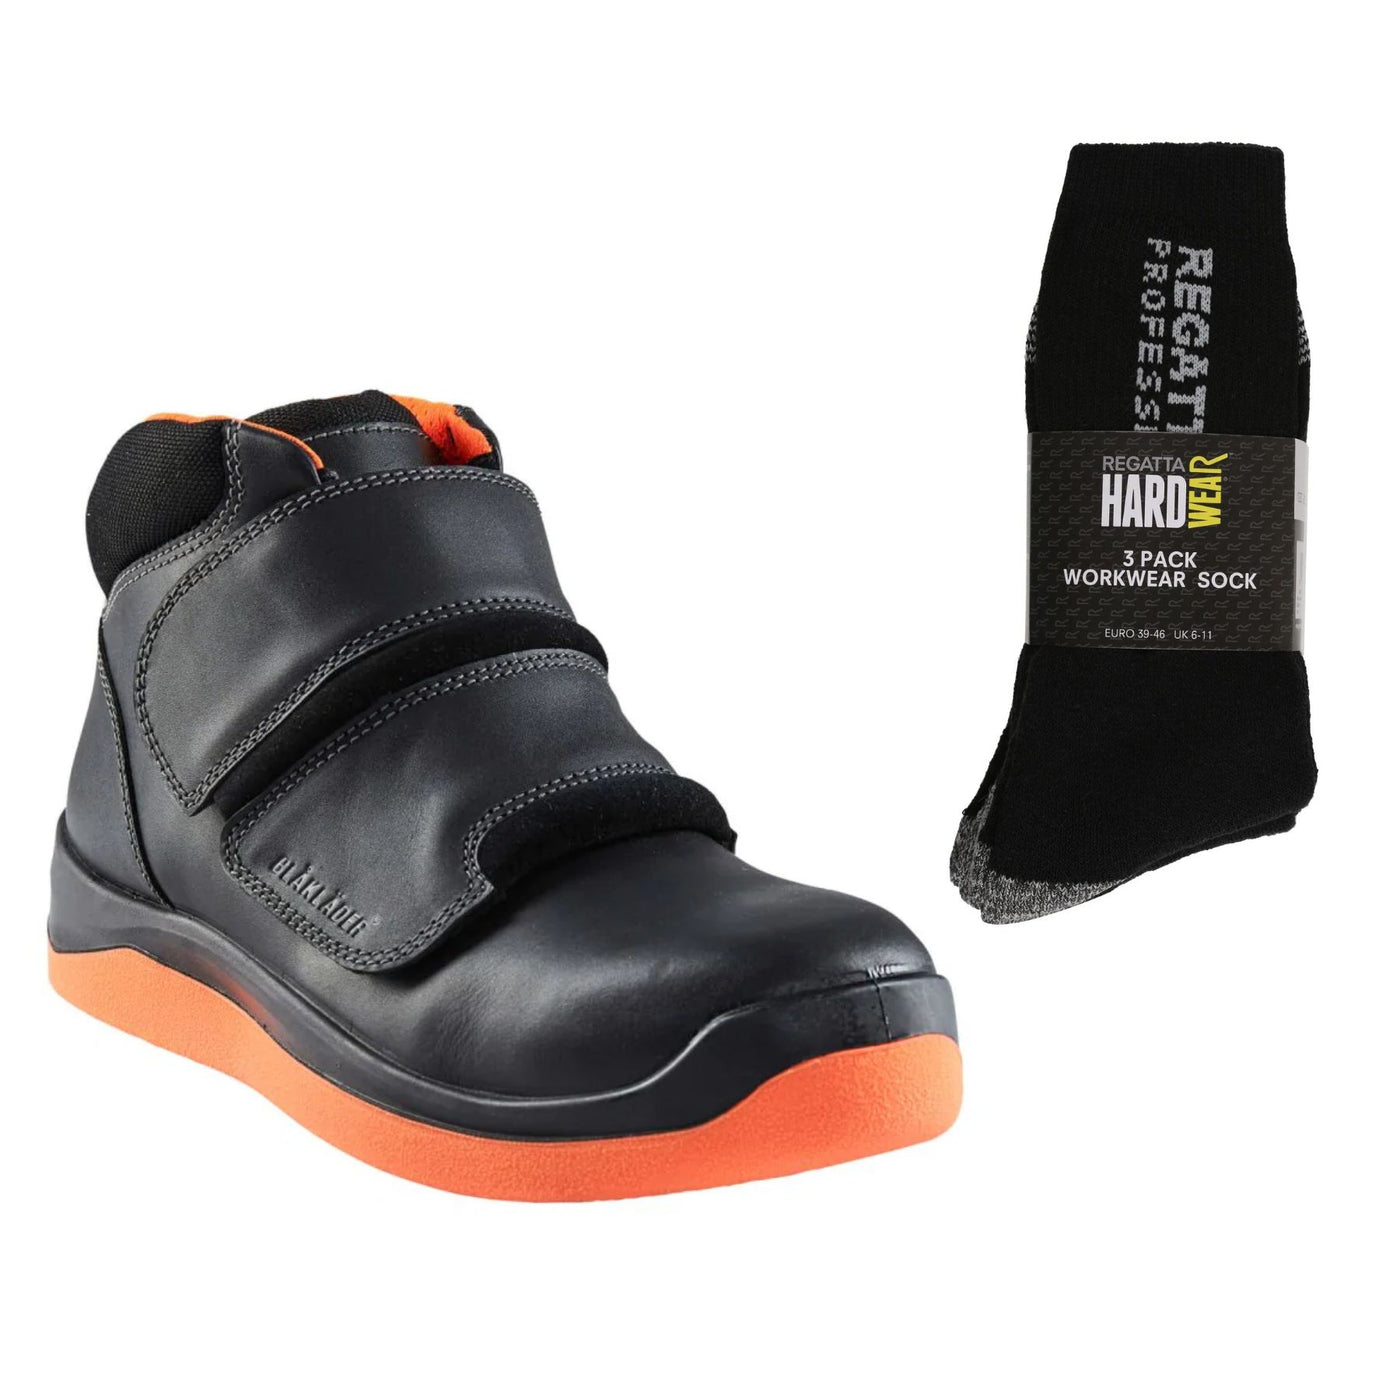 Blaklader 2459 Special Offer Pack - Asphalt Safety Boots S3 (24590000) + 3 Pairs Work Socks